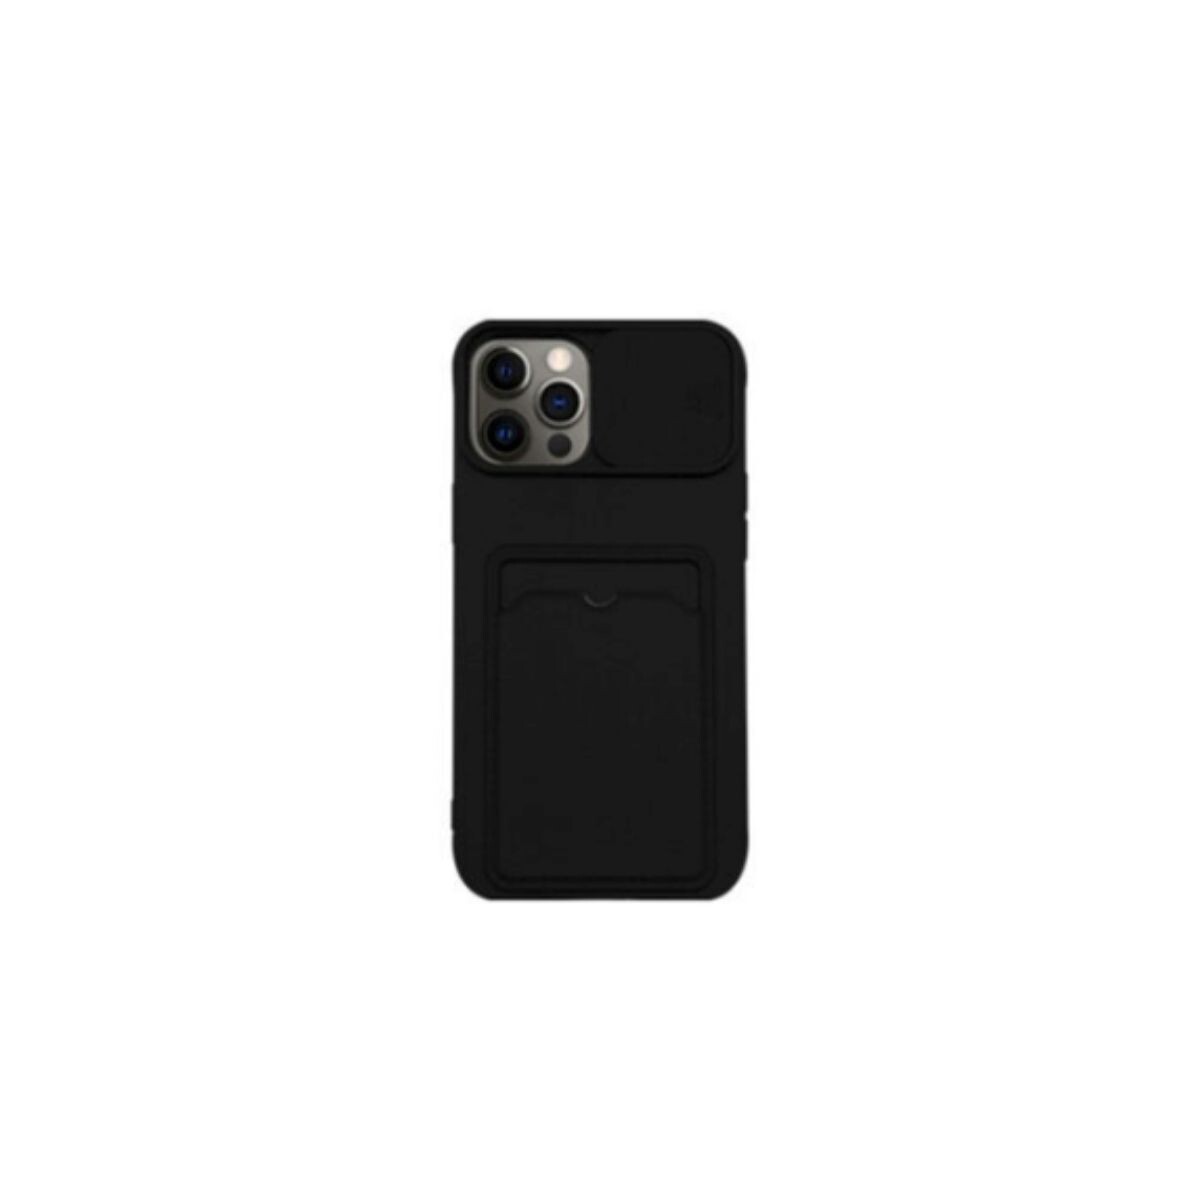 Protector cubre cámara para Iphone 12 negro 